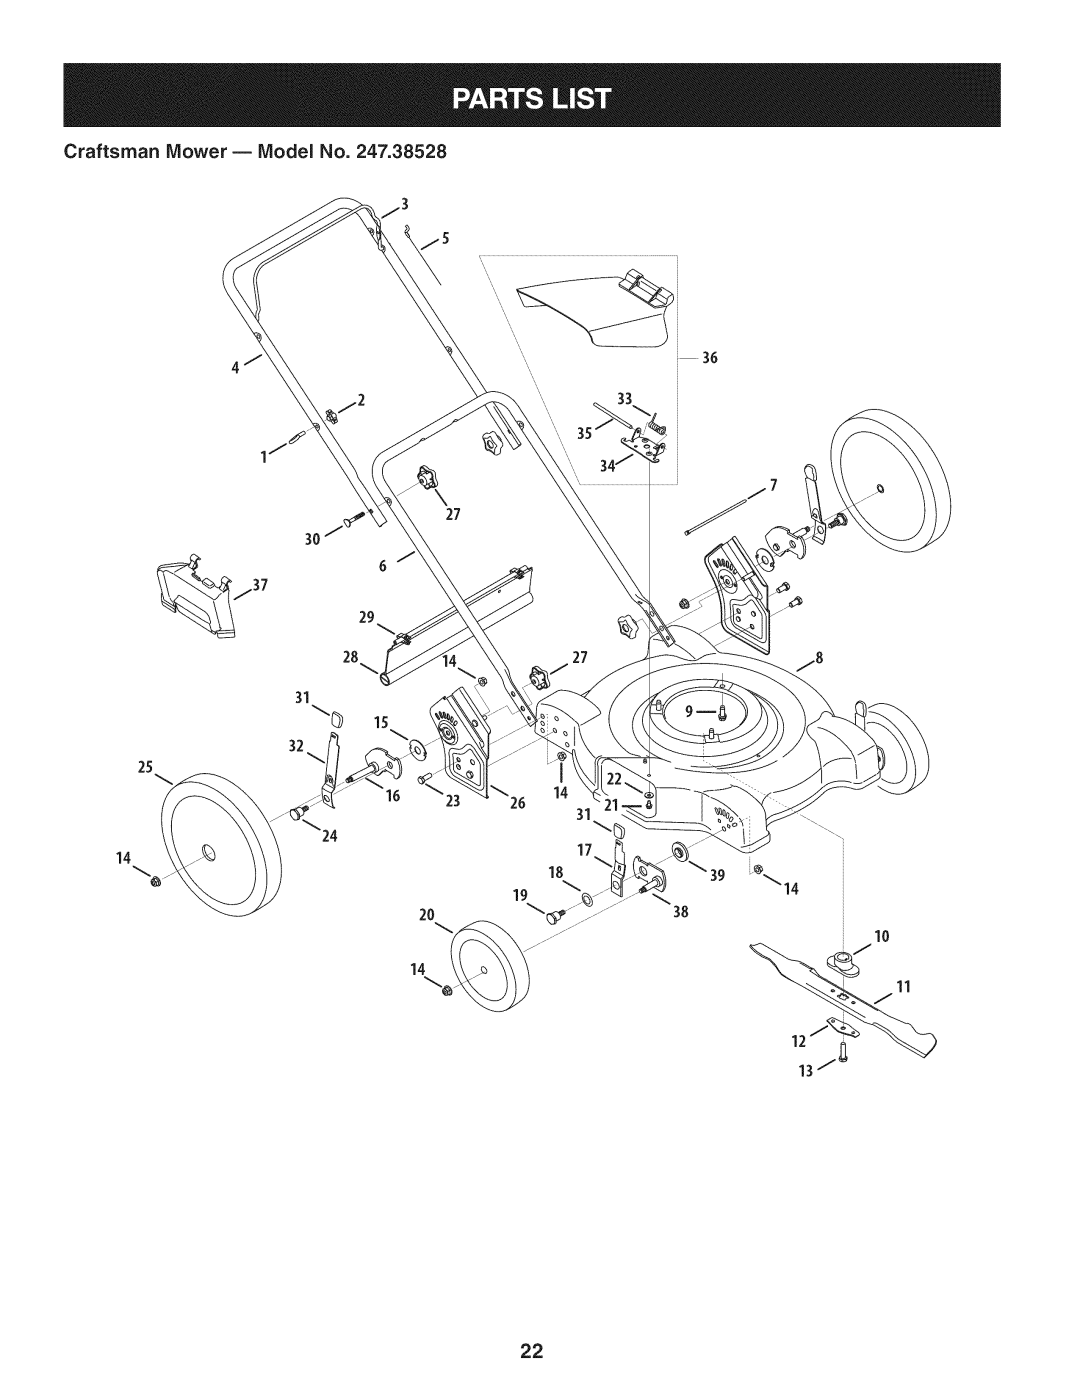 Craftsman 247.38528 manual Craftsman Mower B Model No, 27 2827, 10 11 J 